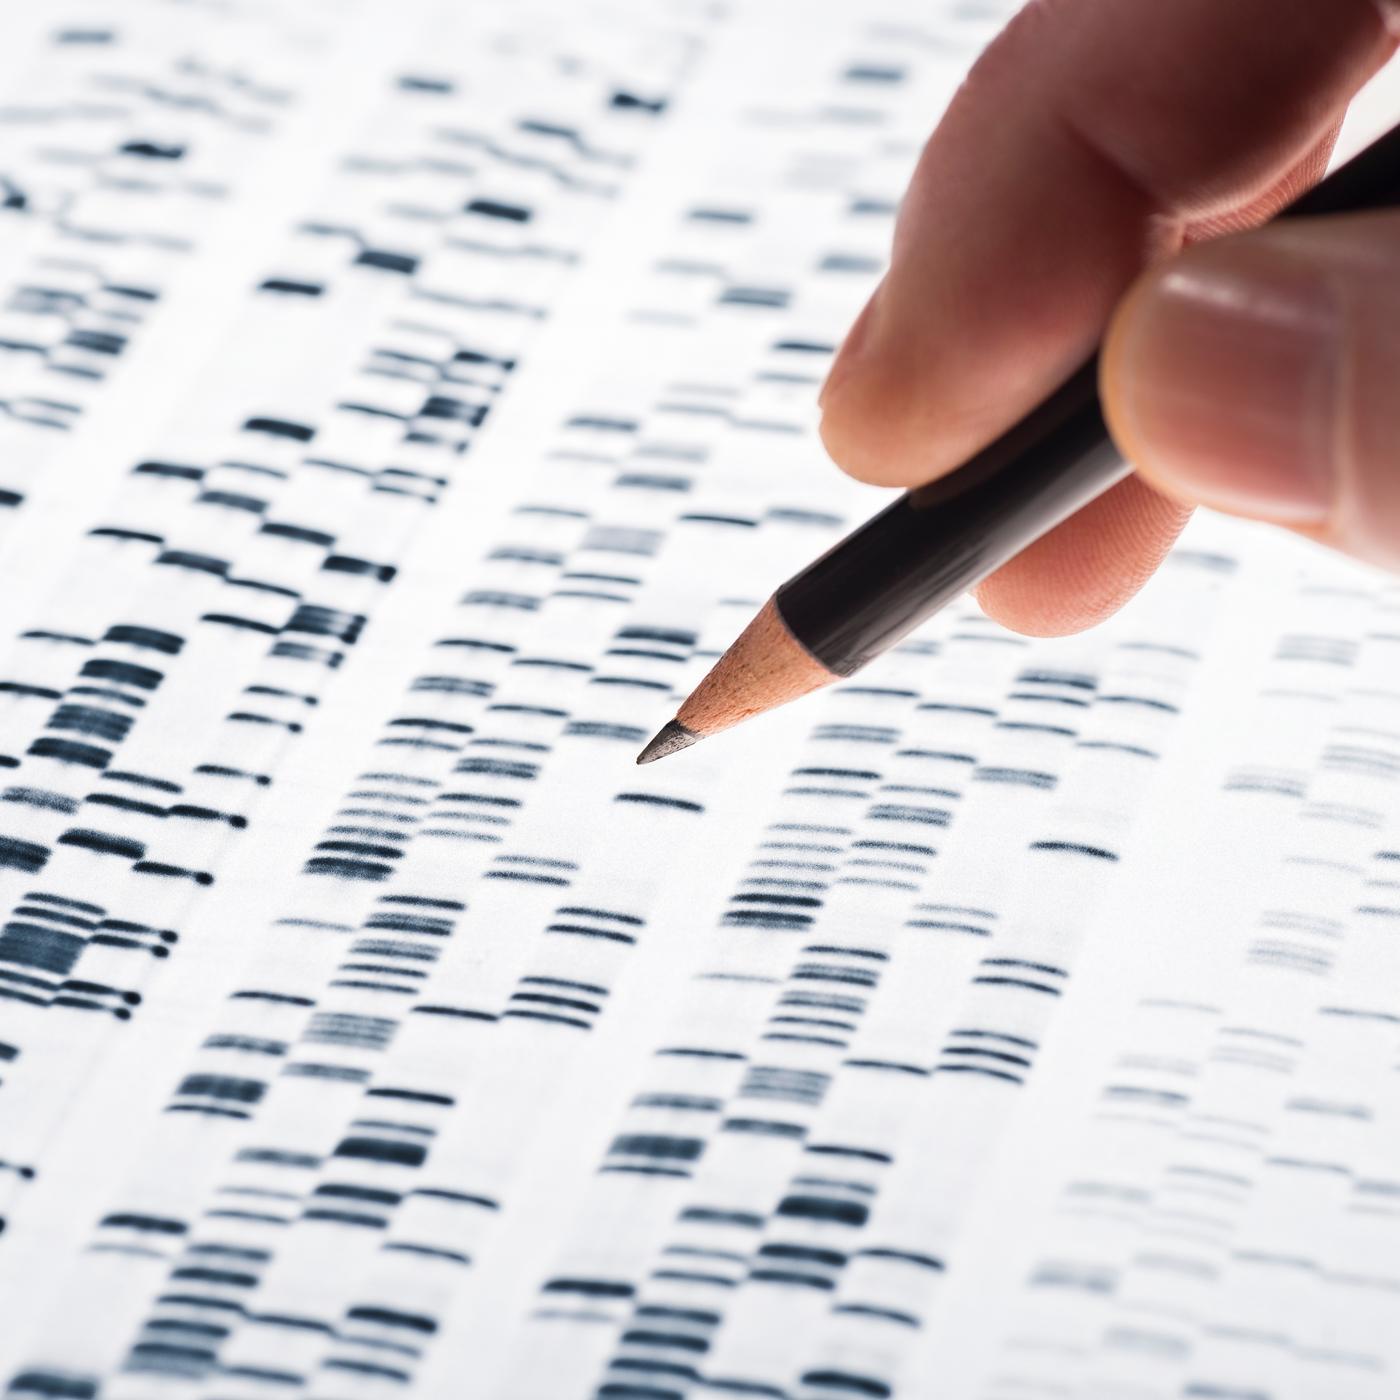 La médecine du futur dans l’ADN ?